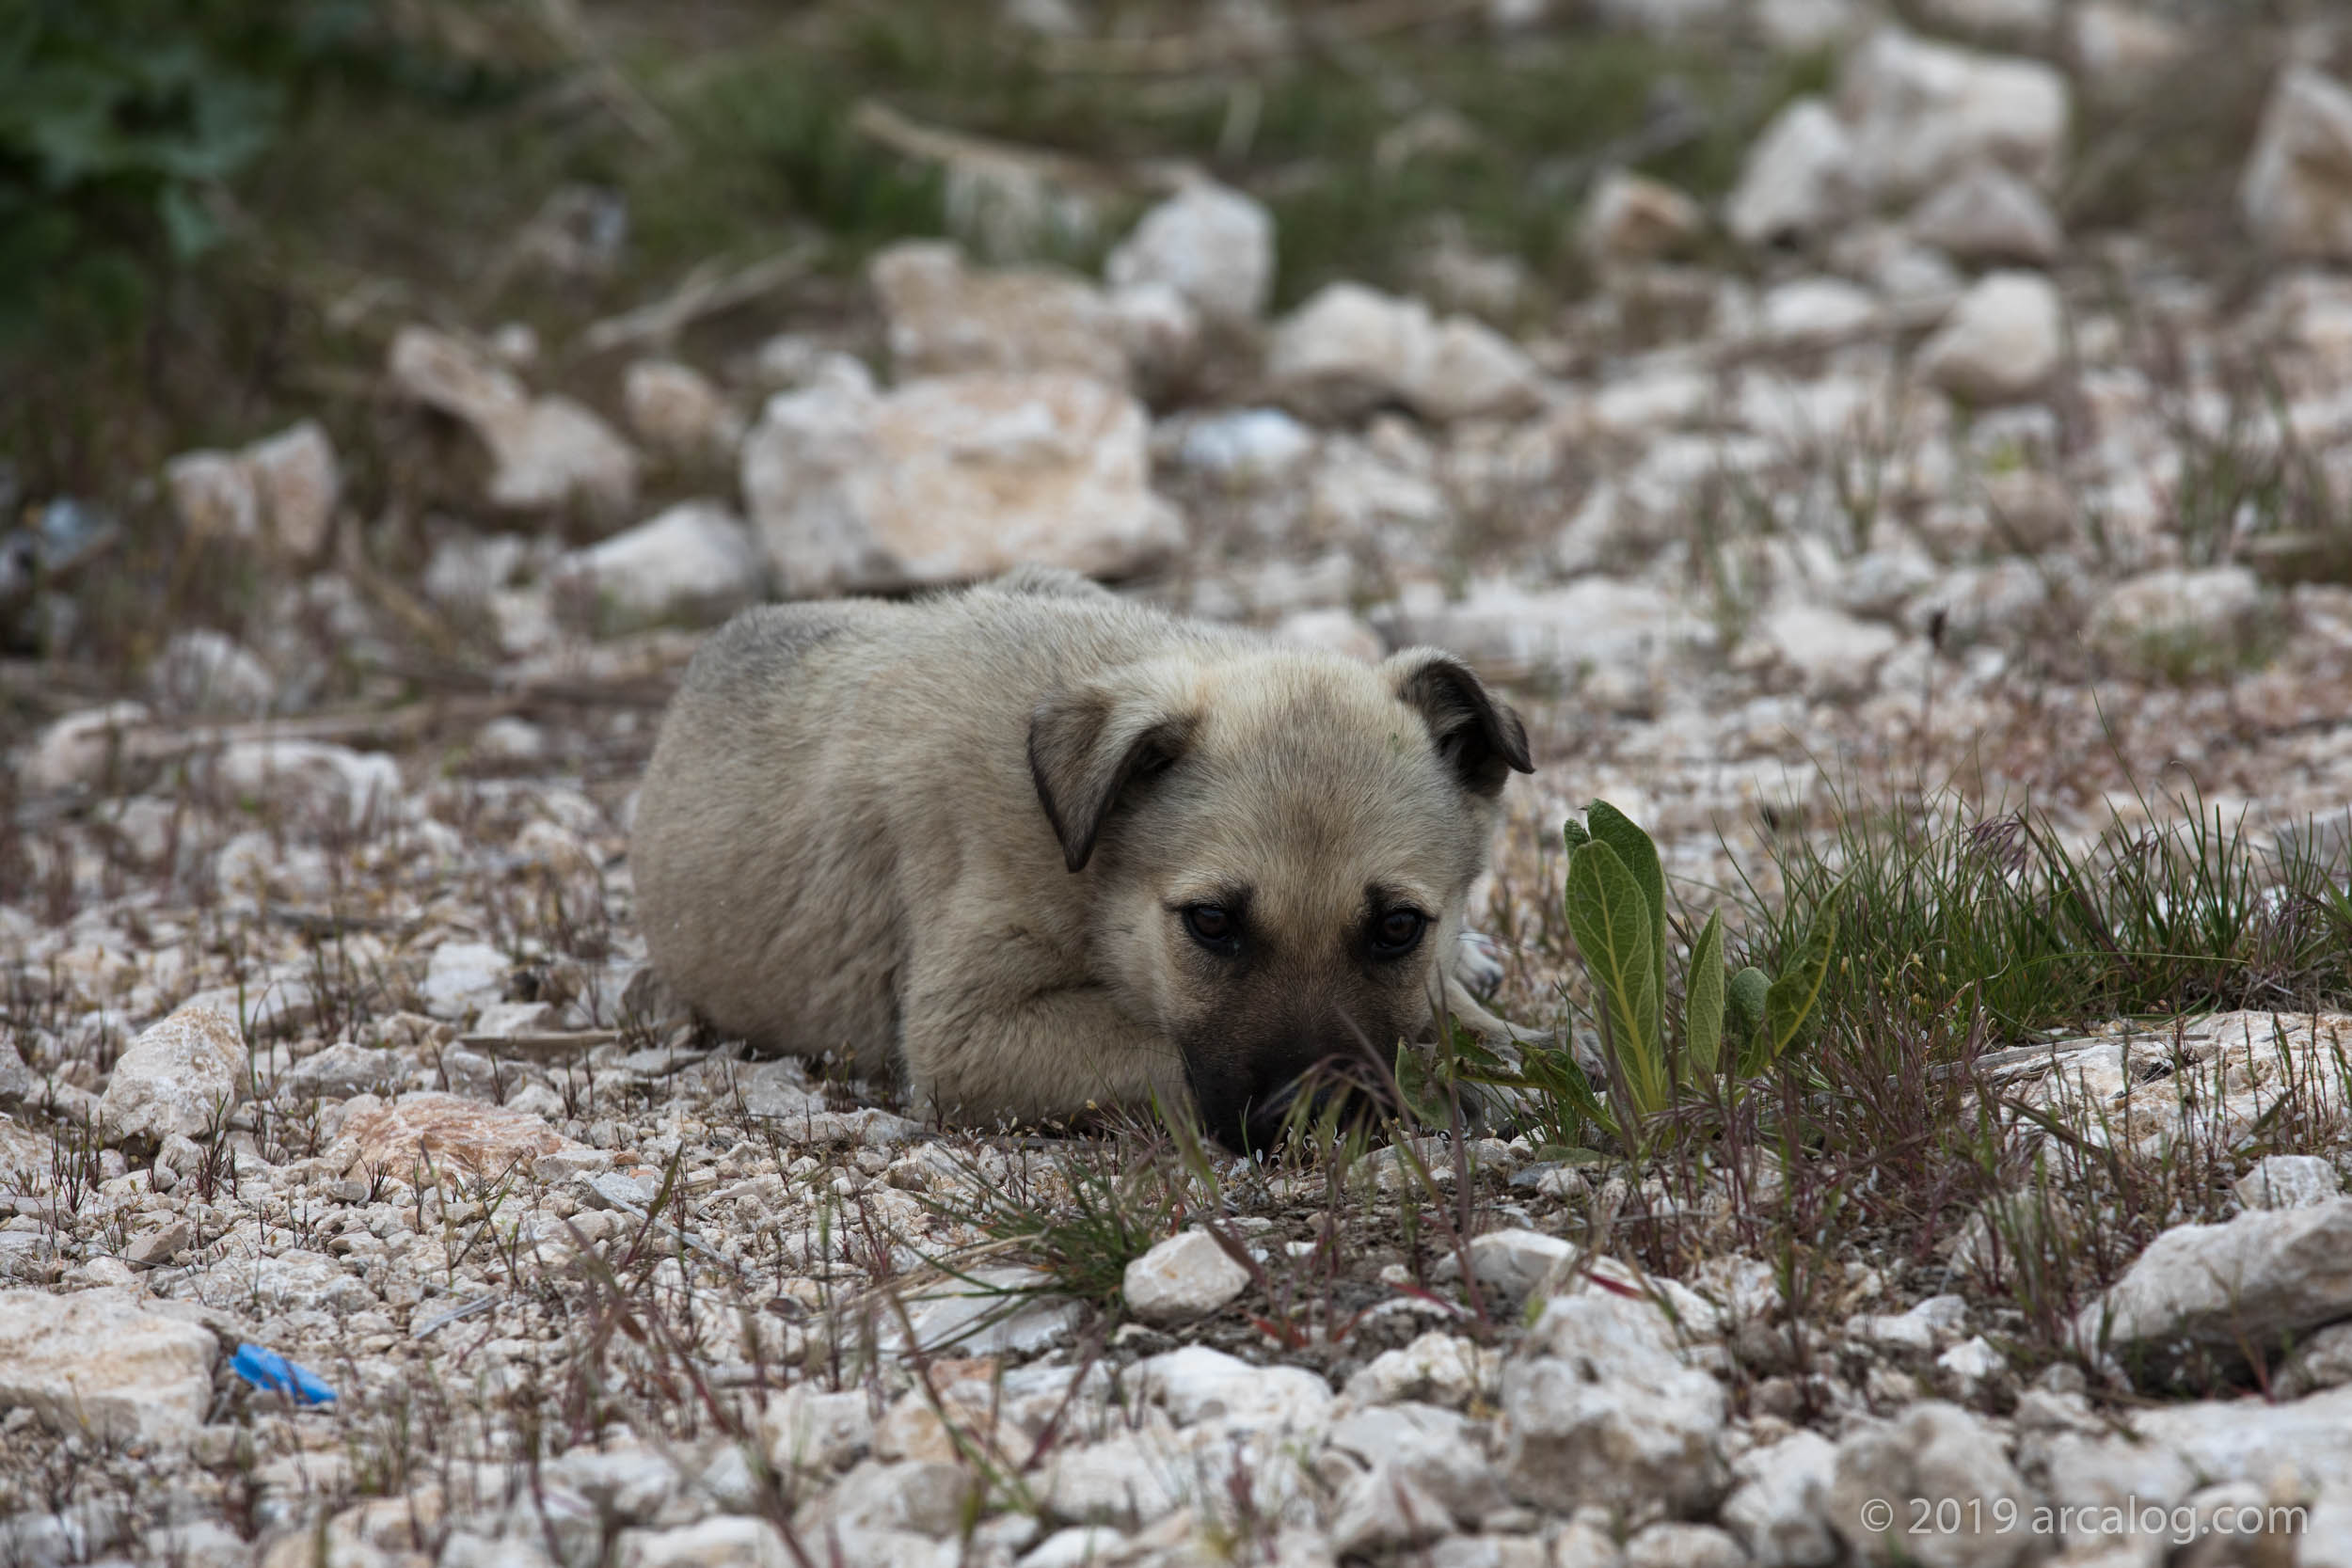 Little Puppy in Van, Turkey